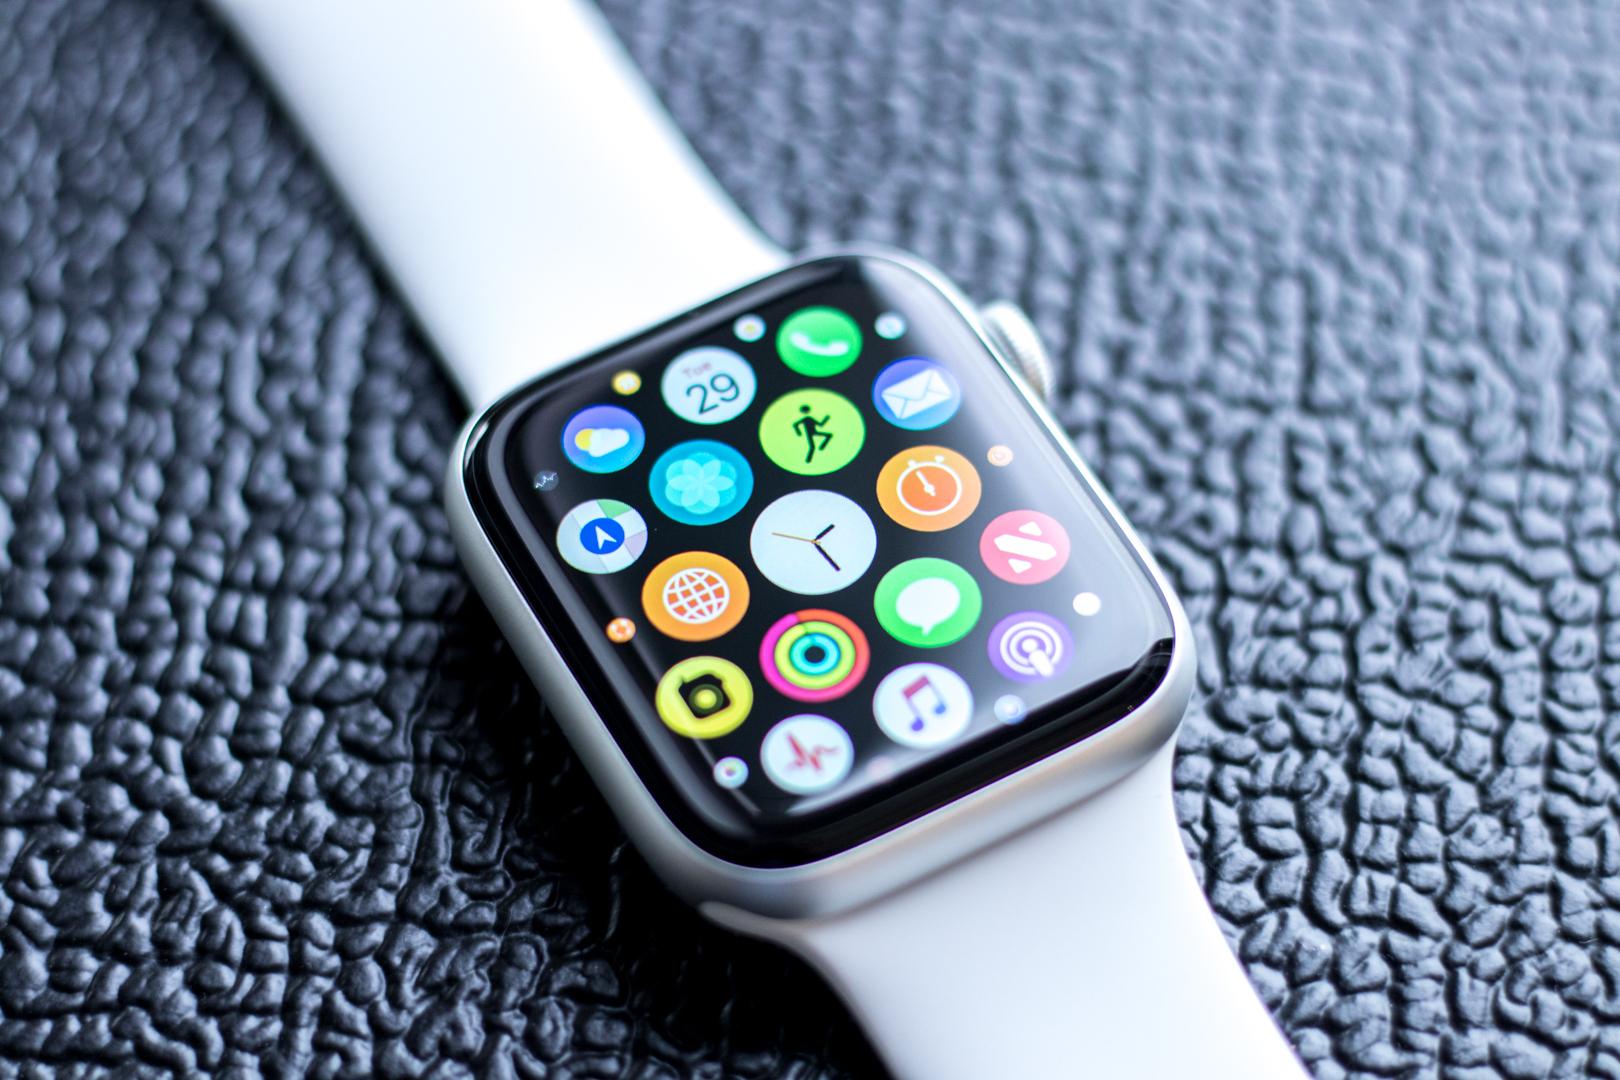 Phiên bản Apple Watch 4 năm 2019 với 3 màu sắc cá tính